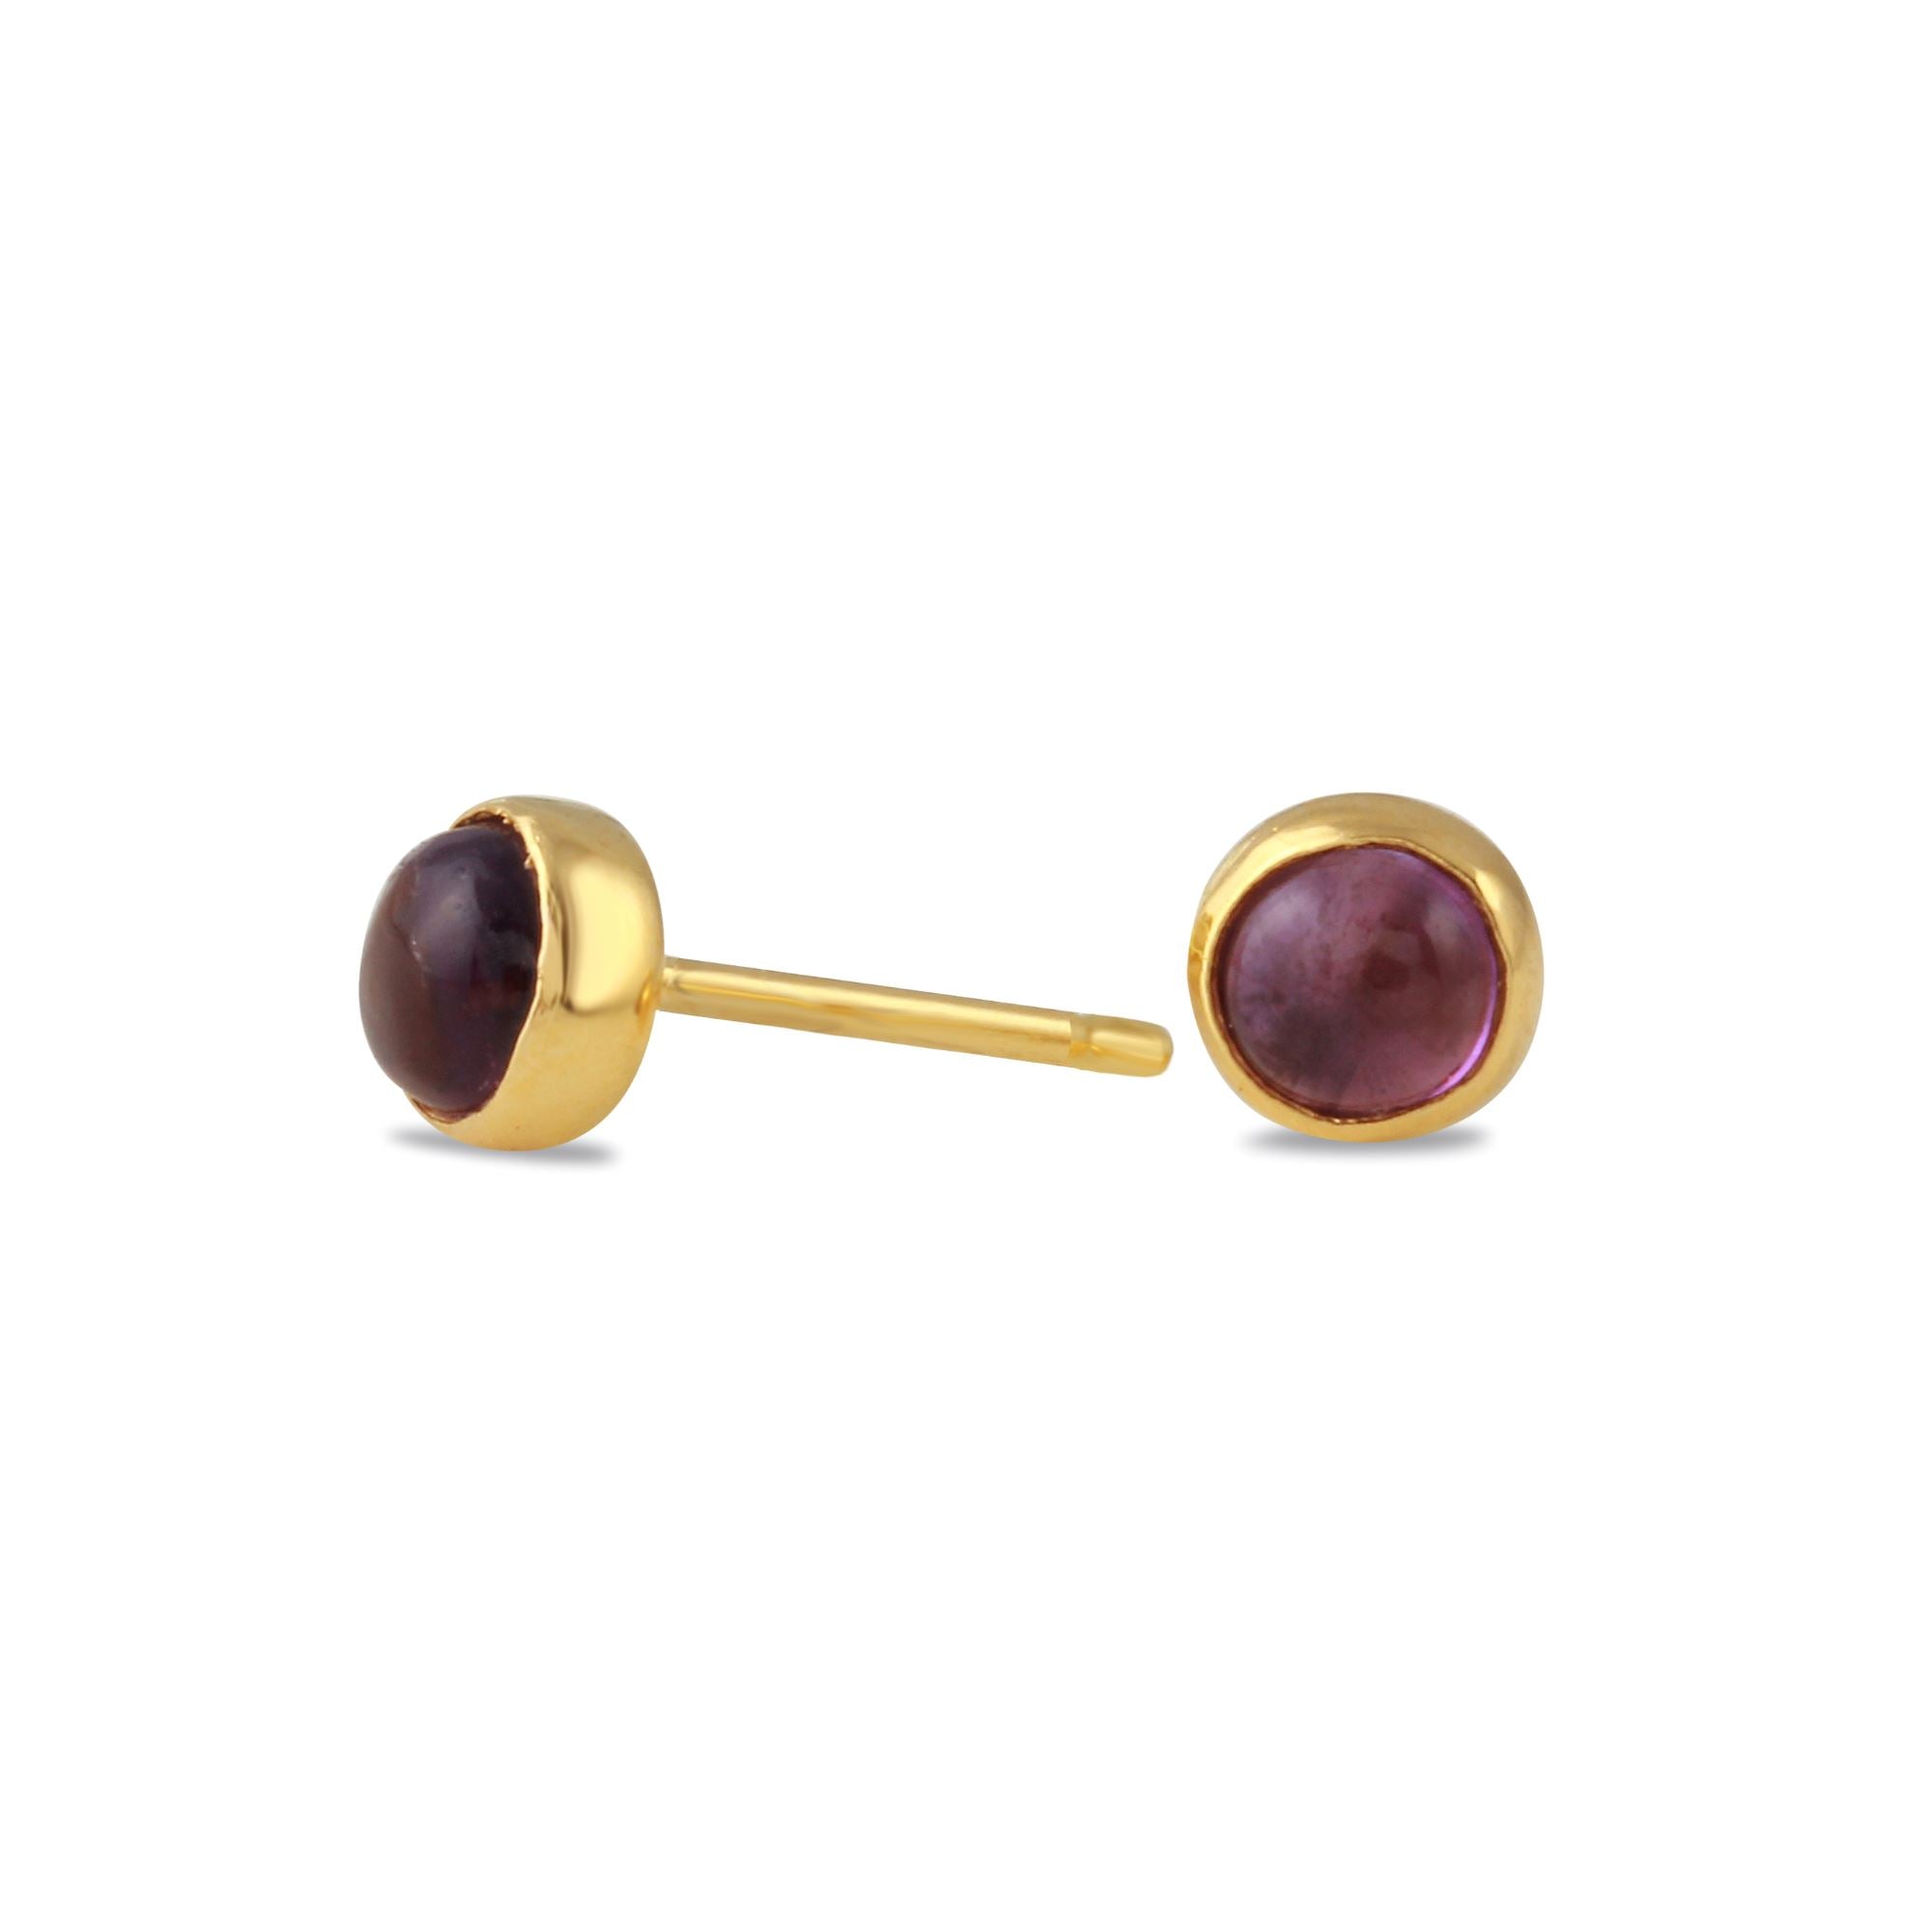 Amethyst Gemdrop 4mm Stud Earrings - 18K gold vermeil | Petite Collection earrings Amanda K Lockrow